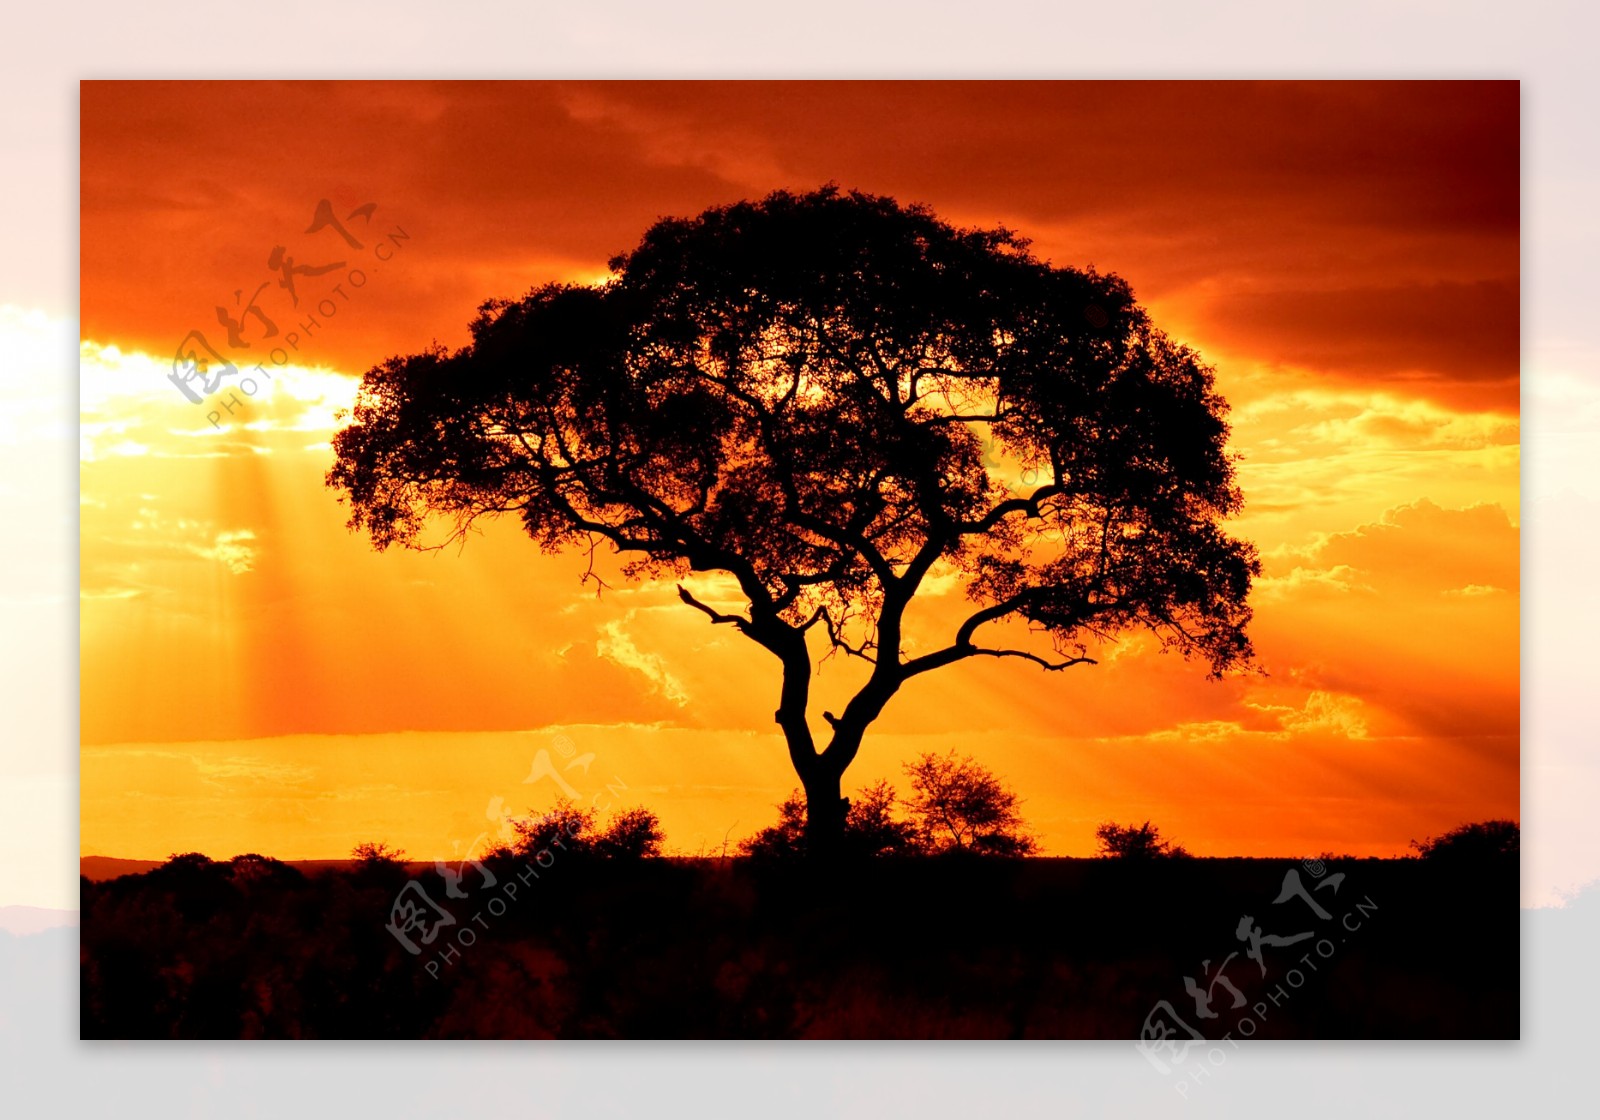 夕阳下的树木风景图片